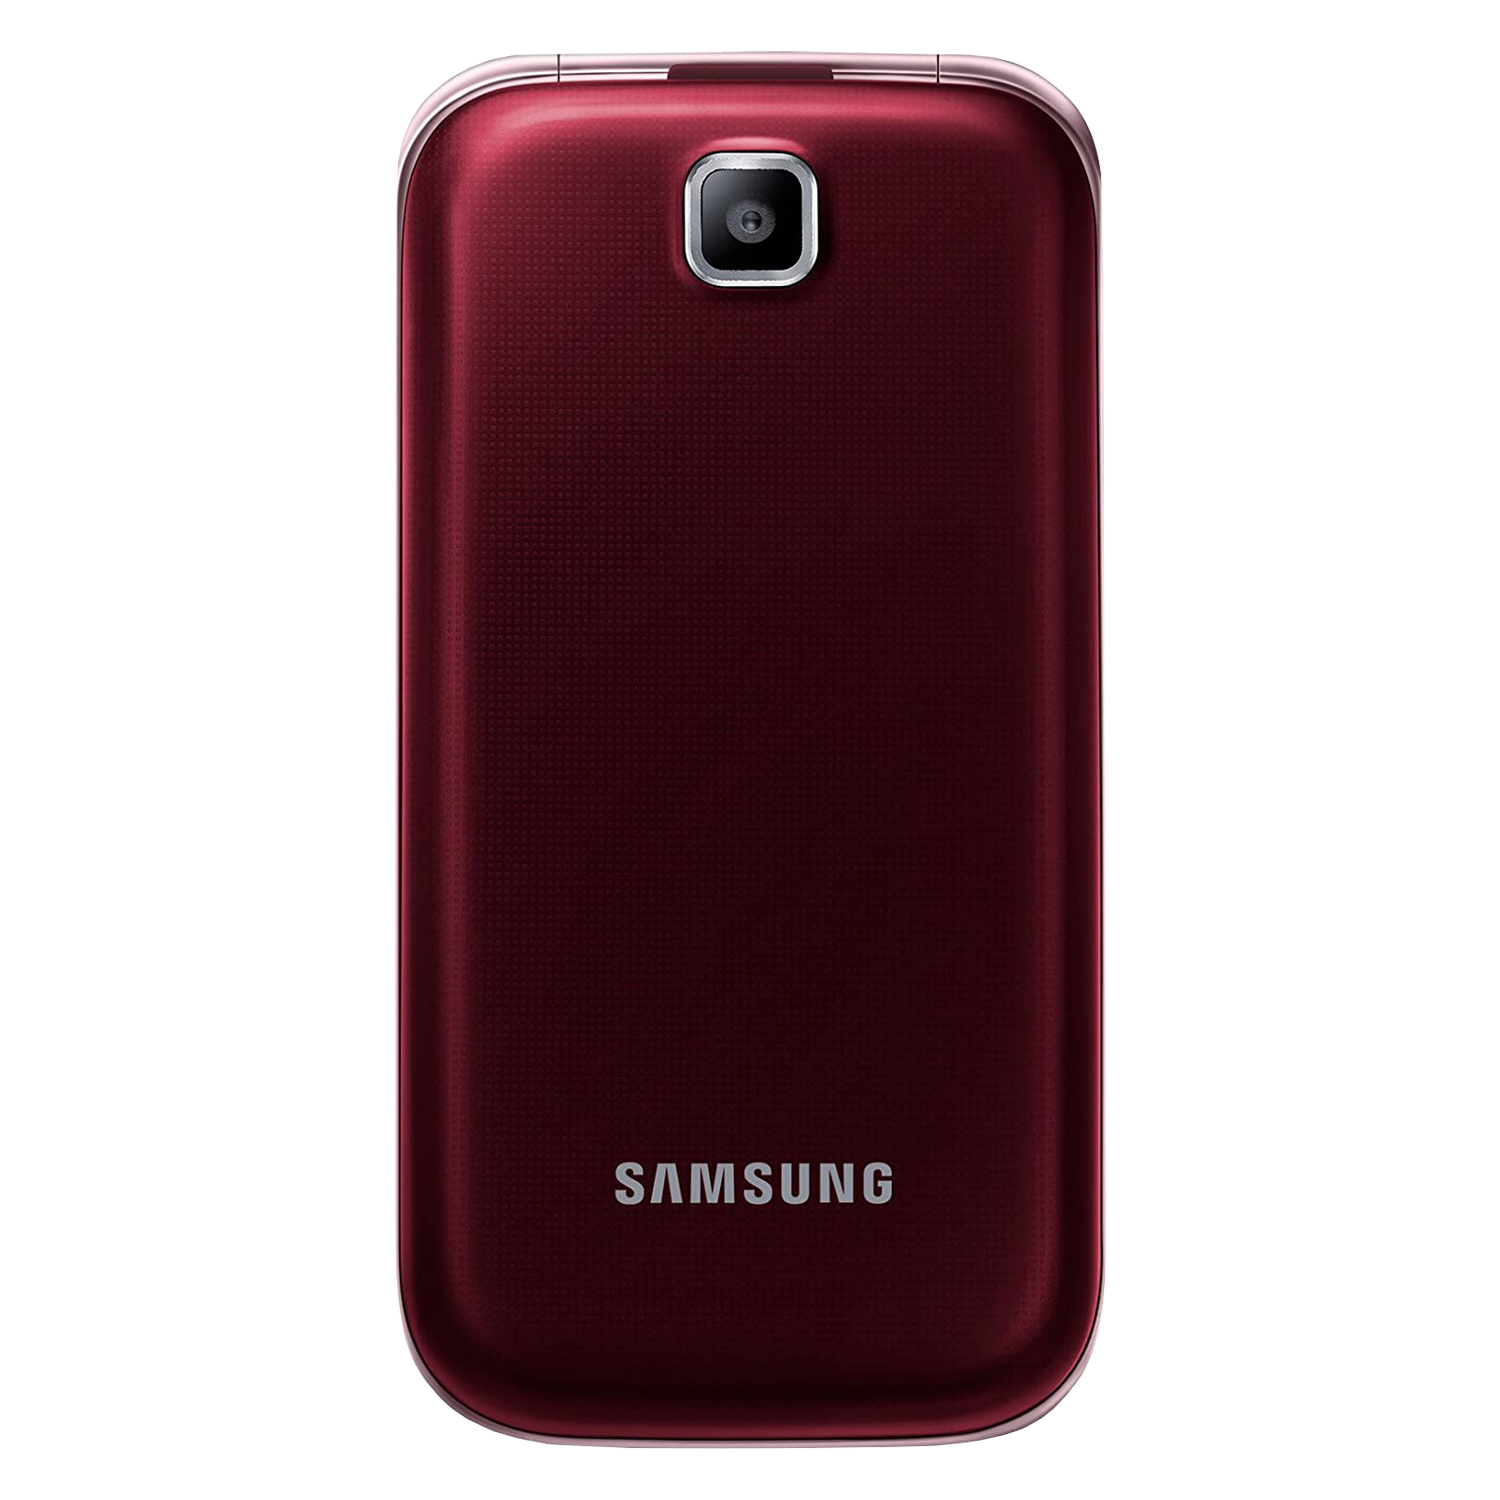 Celular Samsung GT-C3592 Flip Dual SIM Tela 2.4" - Vermelho 
